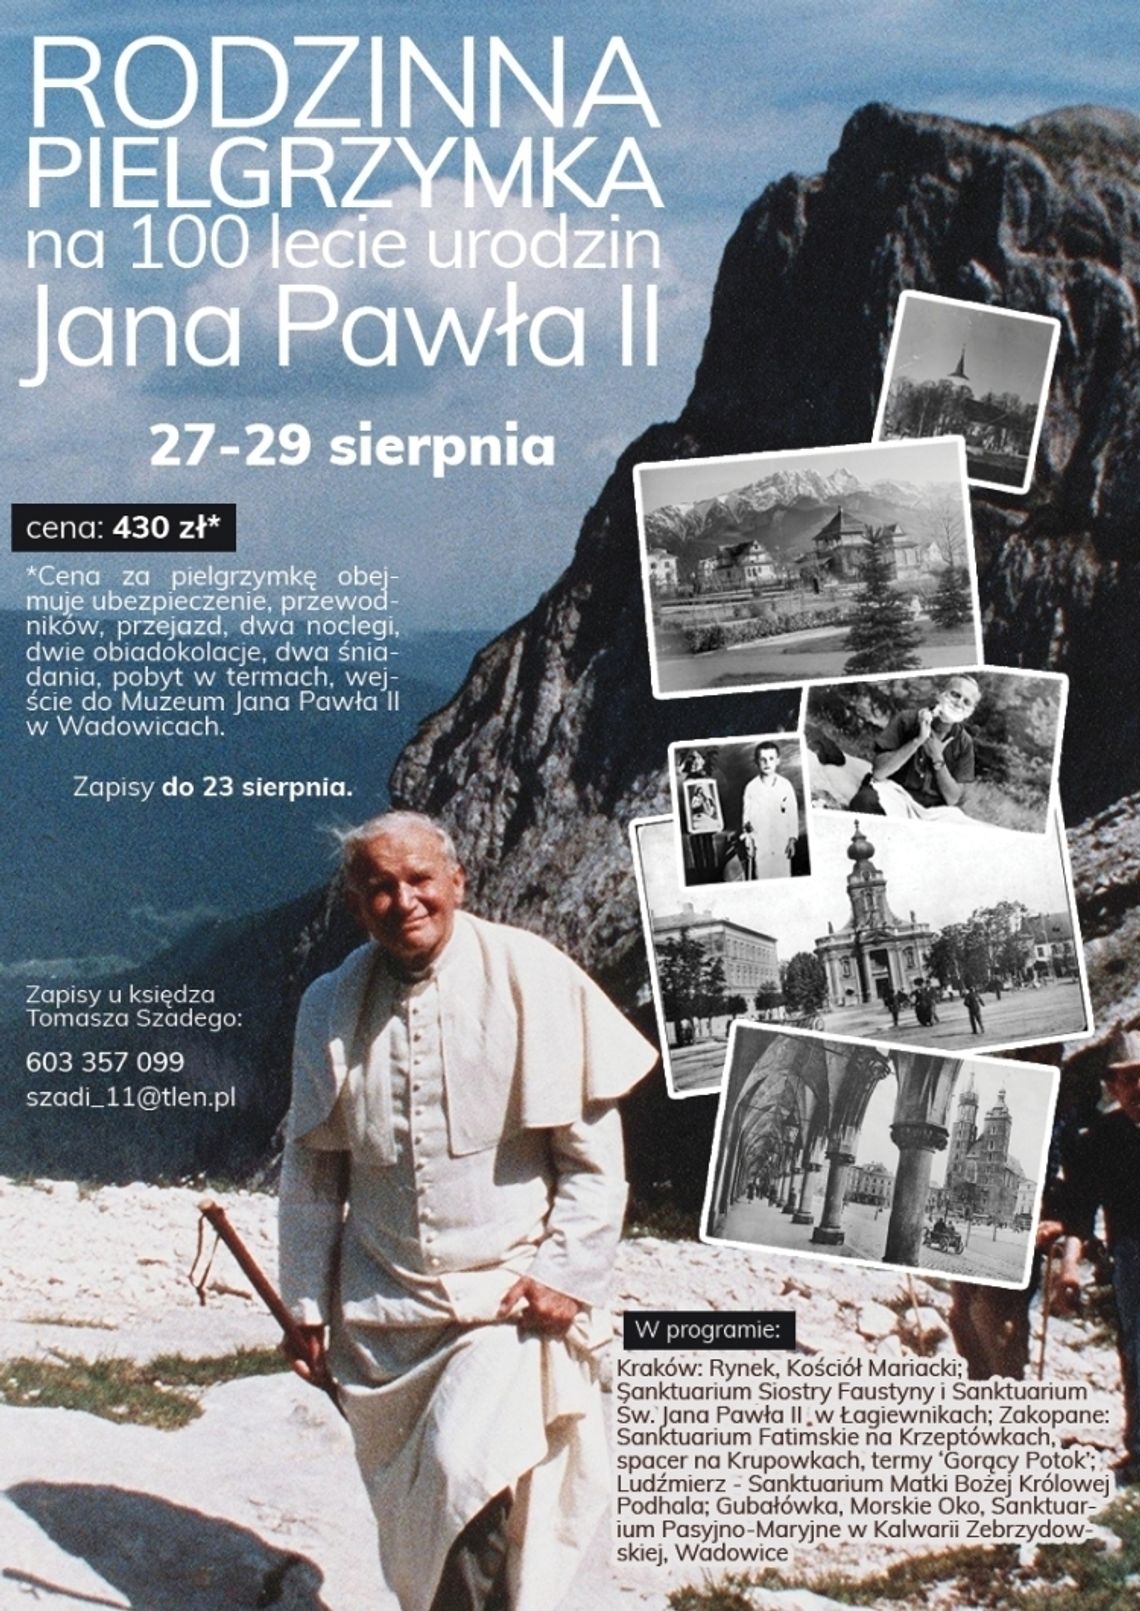 Pielrzymka z okazji 100. urodzin św. Jana Pawła II